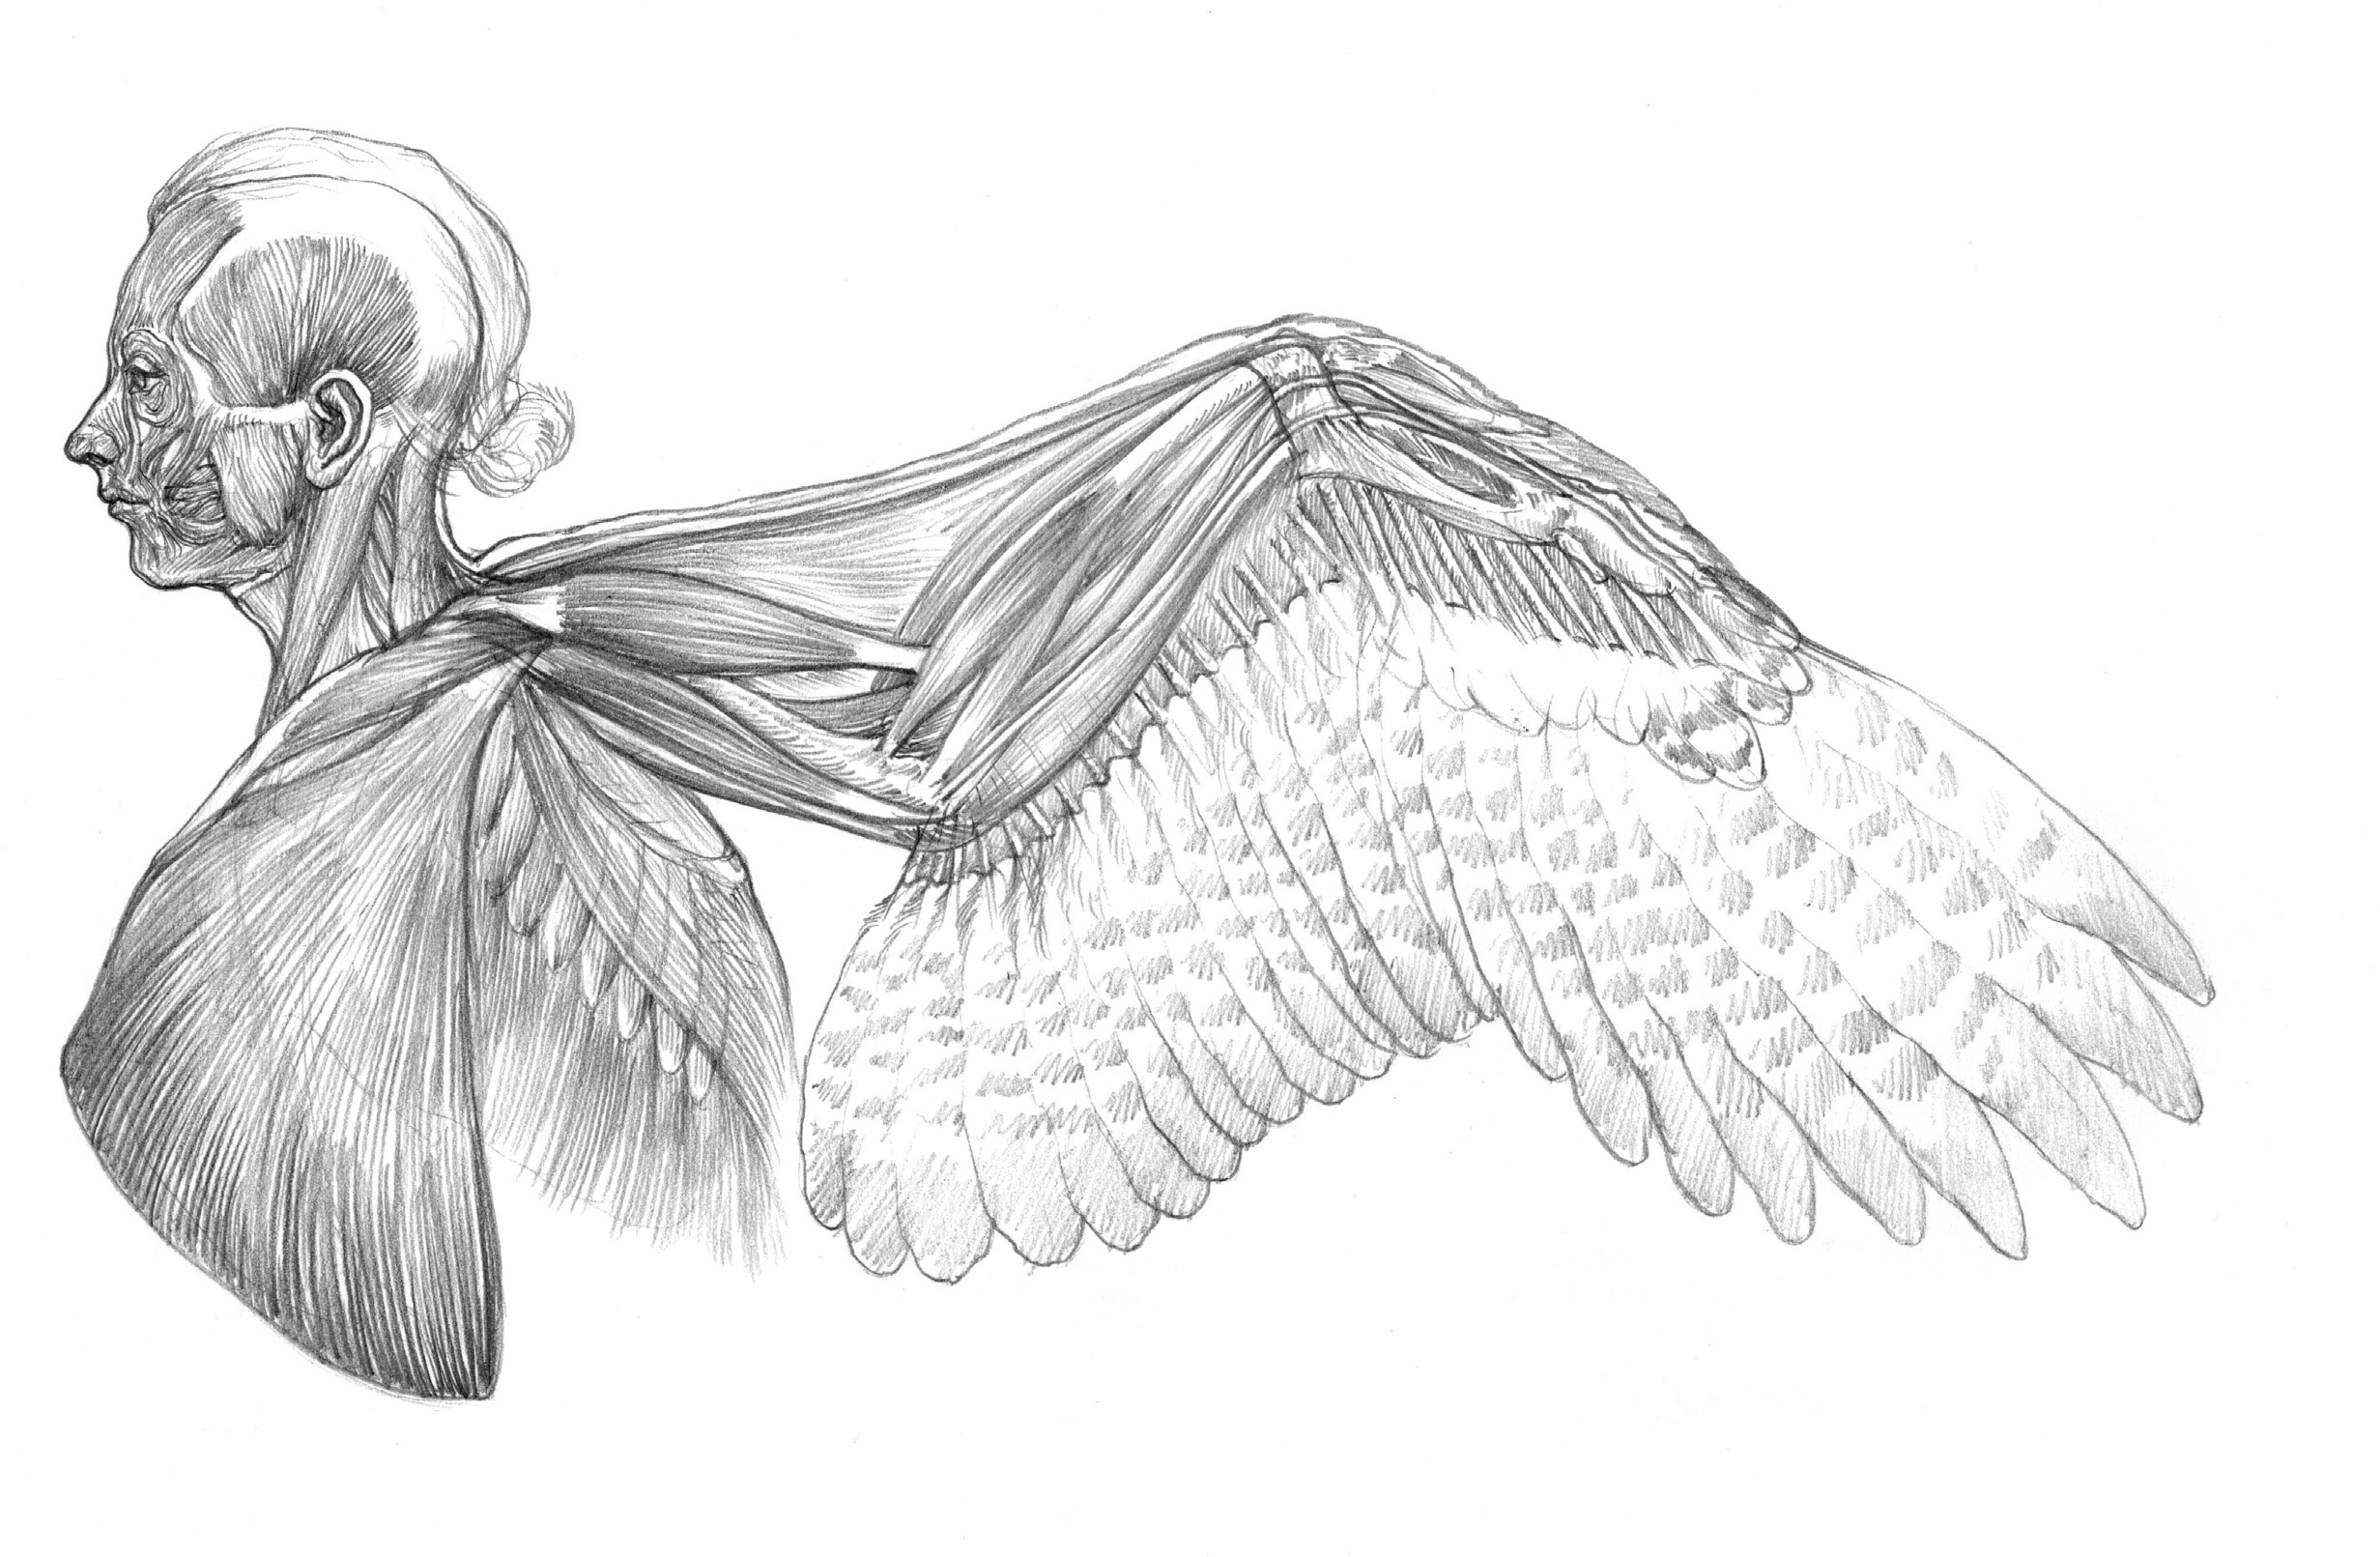 人体に翼を生やすことは可能か キューピッドを美術解剖図で考察する 美しい美術解剖図 第2回 Pictures